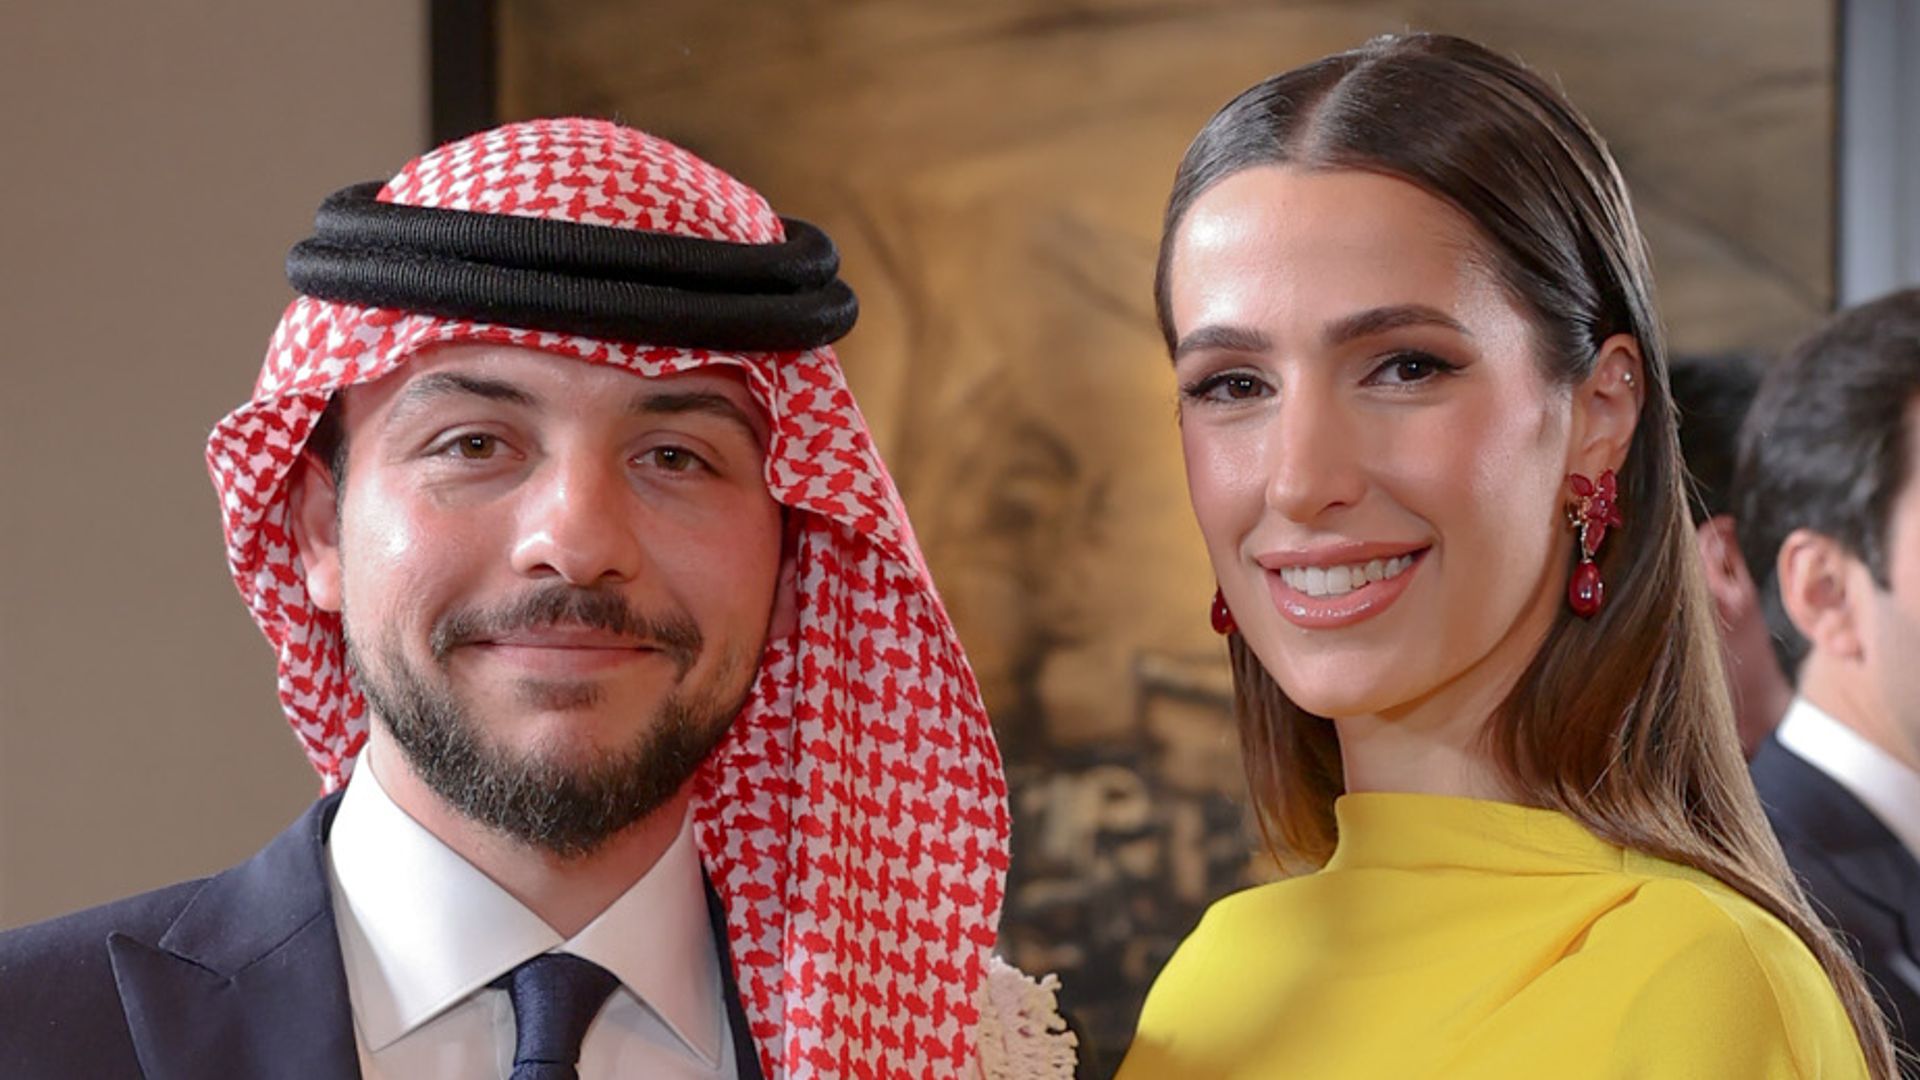 Princess Rajwa of Jordan dazzles in tiara for new official portrait